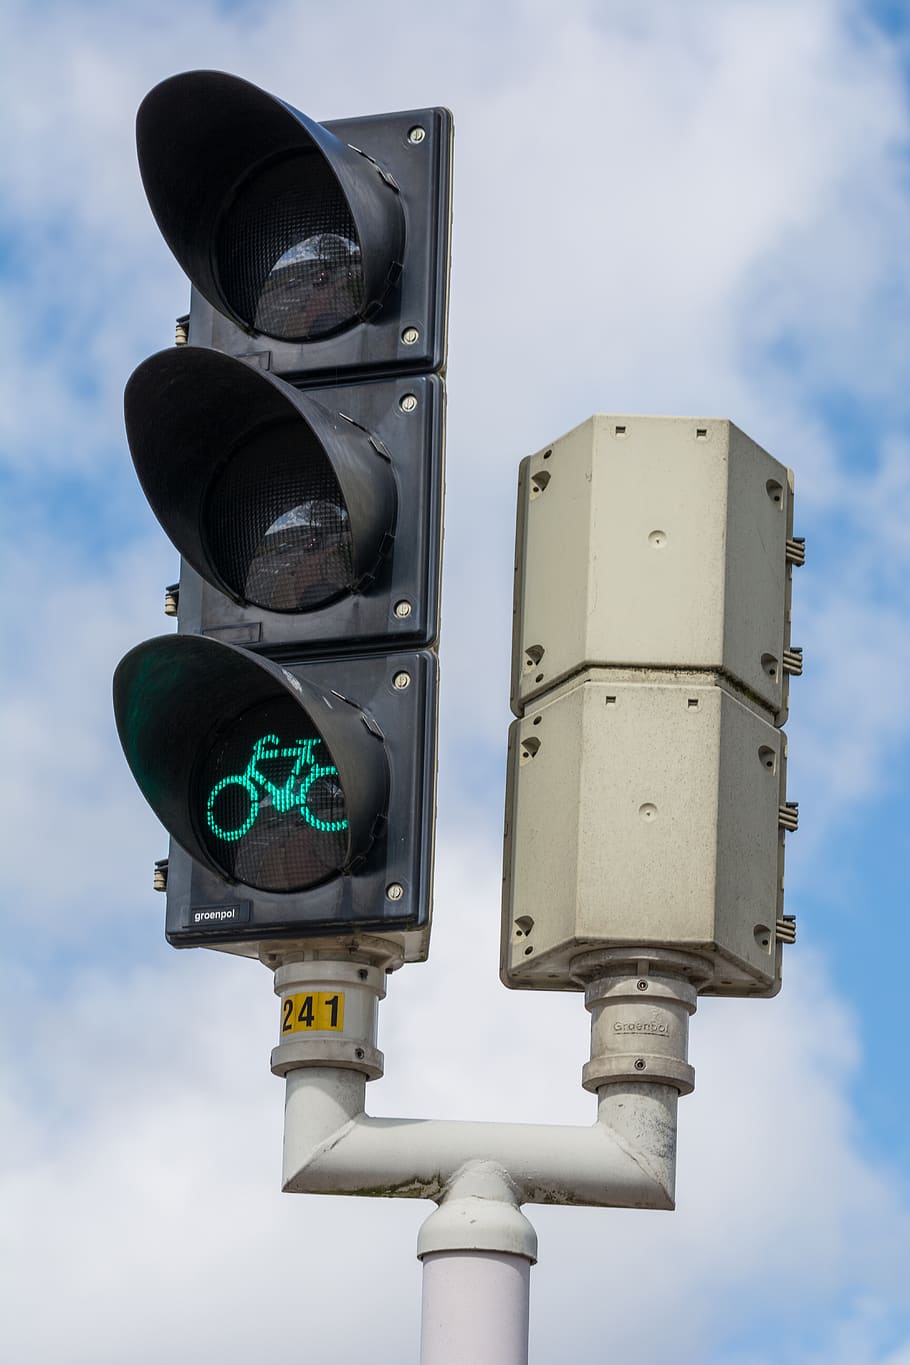 lampu lalulintas, lampu lalu lintas, persimpangan, bahaya, tanda, cahaya, hijau, lampu hijau, sepeda, pengendara sepeda